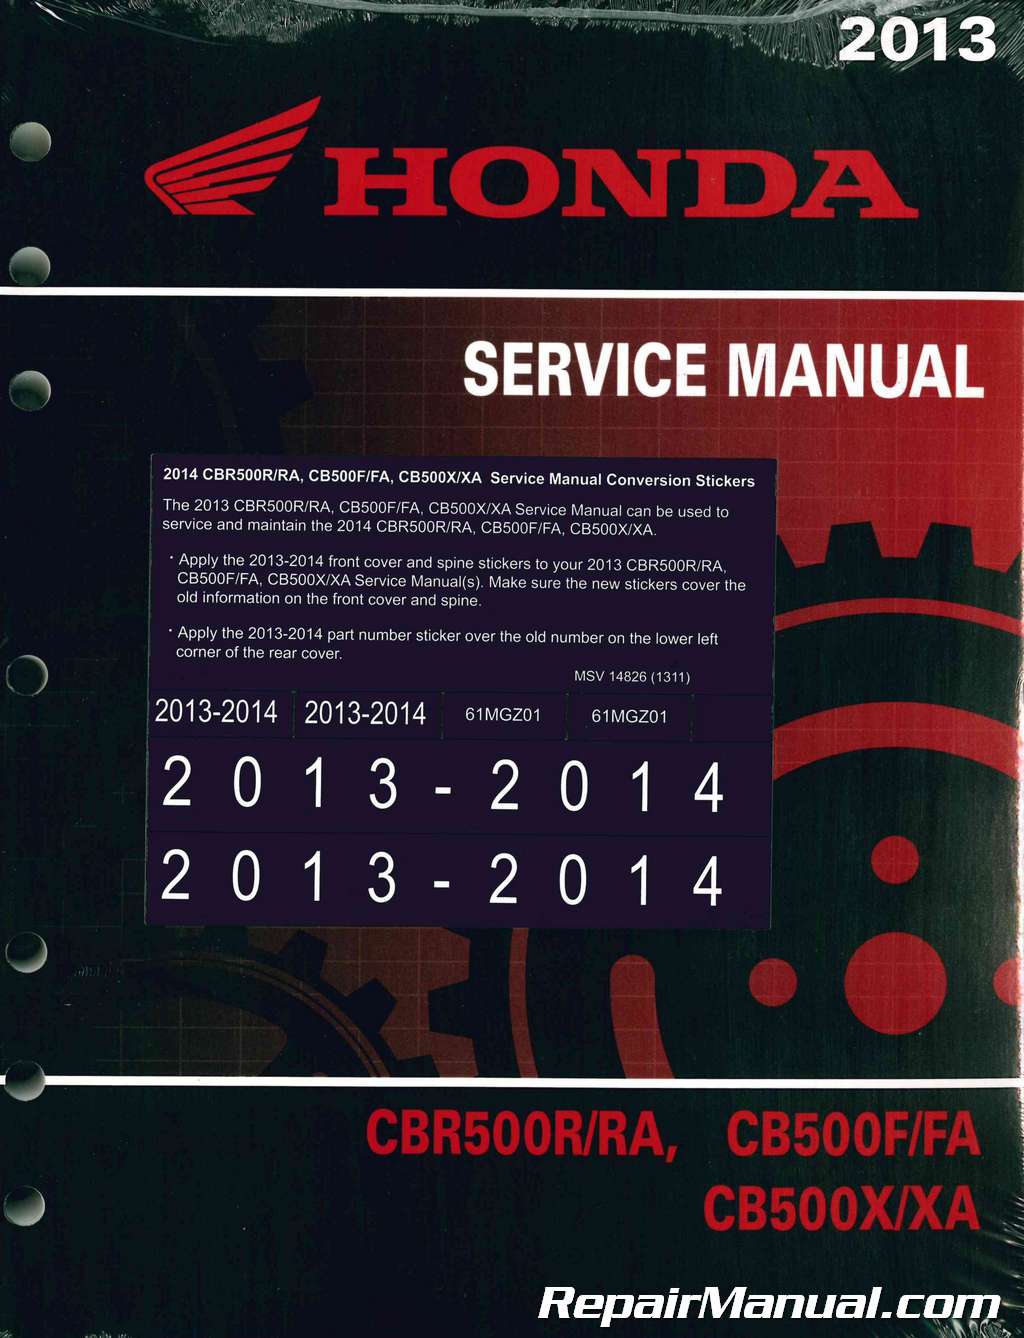 Honda cb500 service manual #4